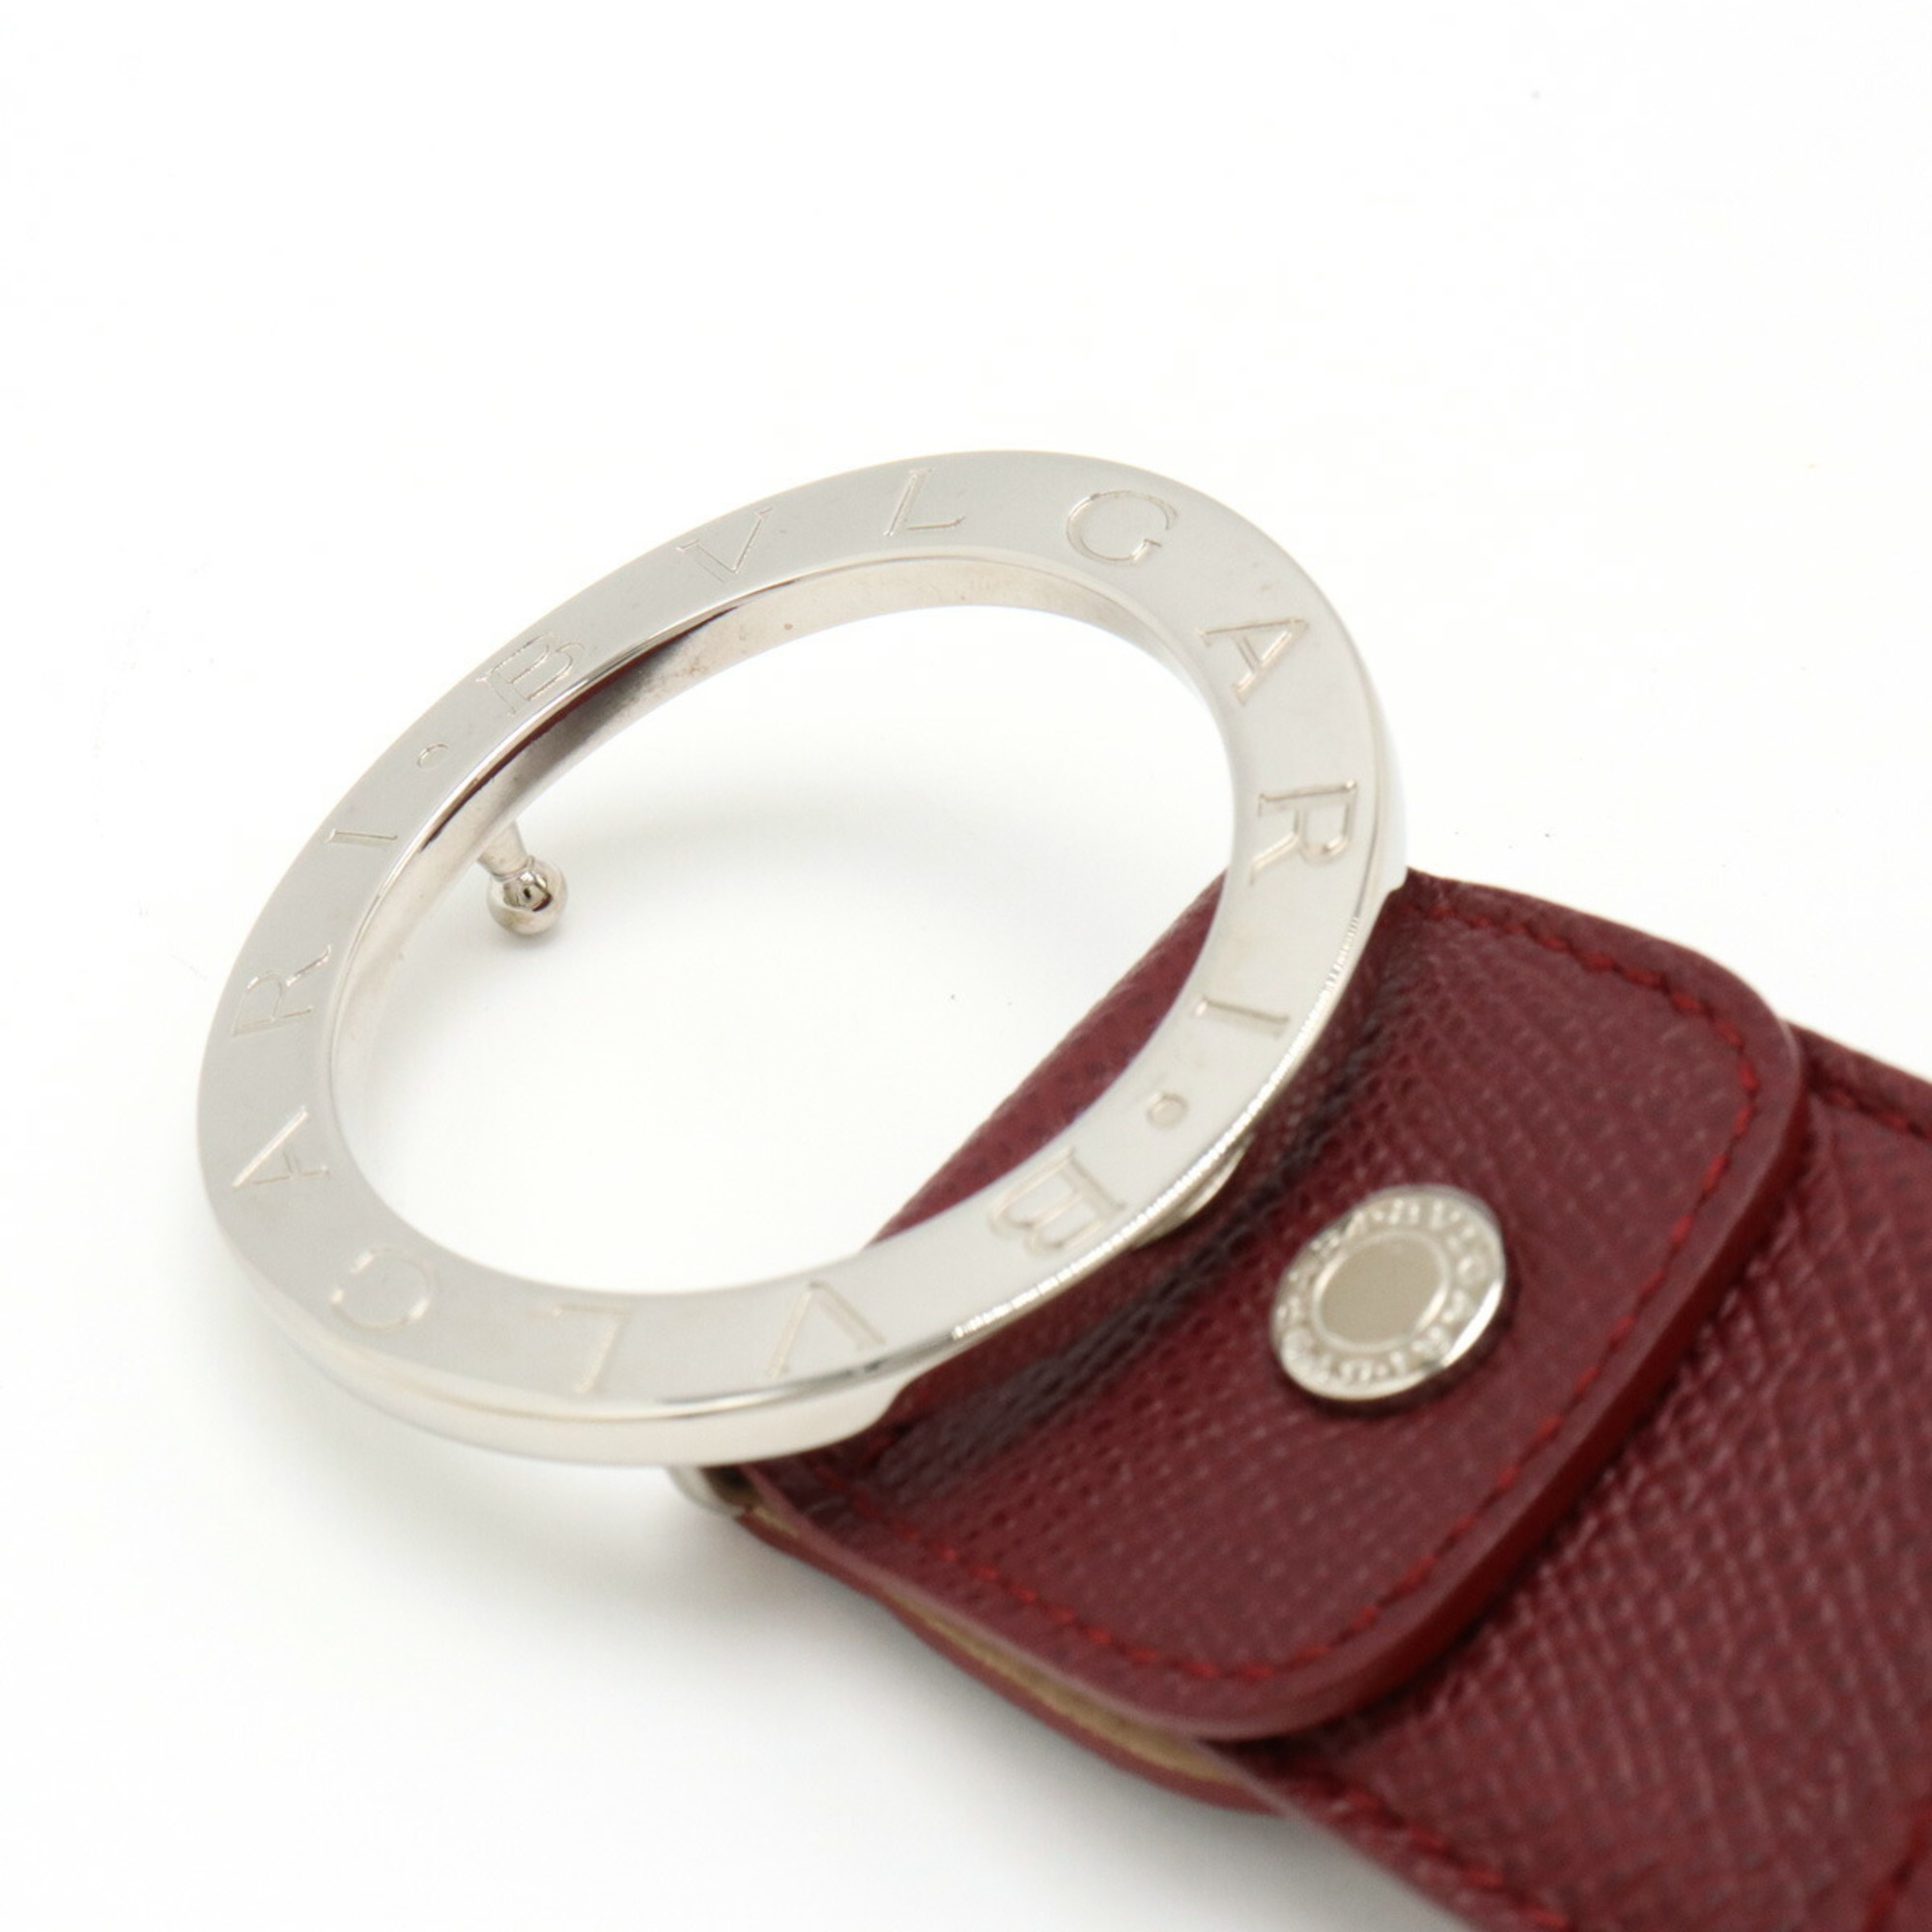 BVLGARI Bulgari Belt Round Buckle Leather Bordeaux Label 44/110 Actual Size 91cm Cut 20230